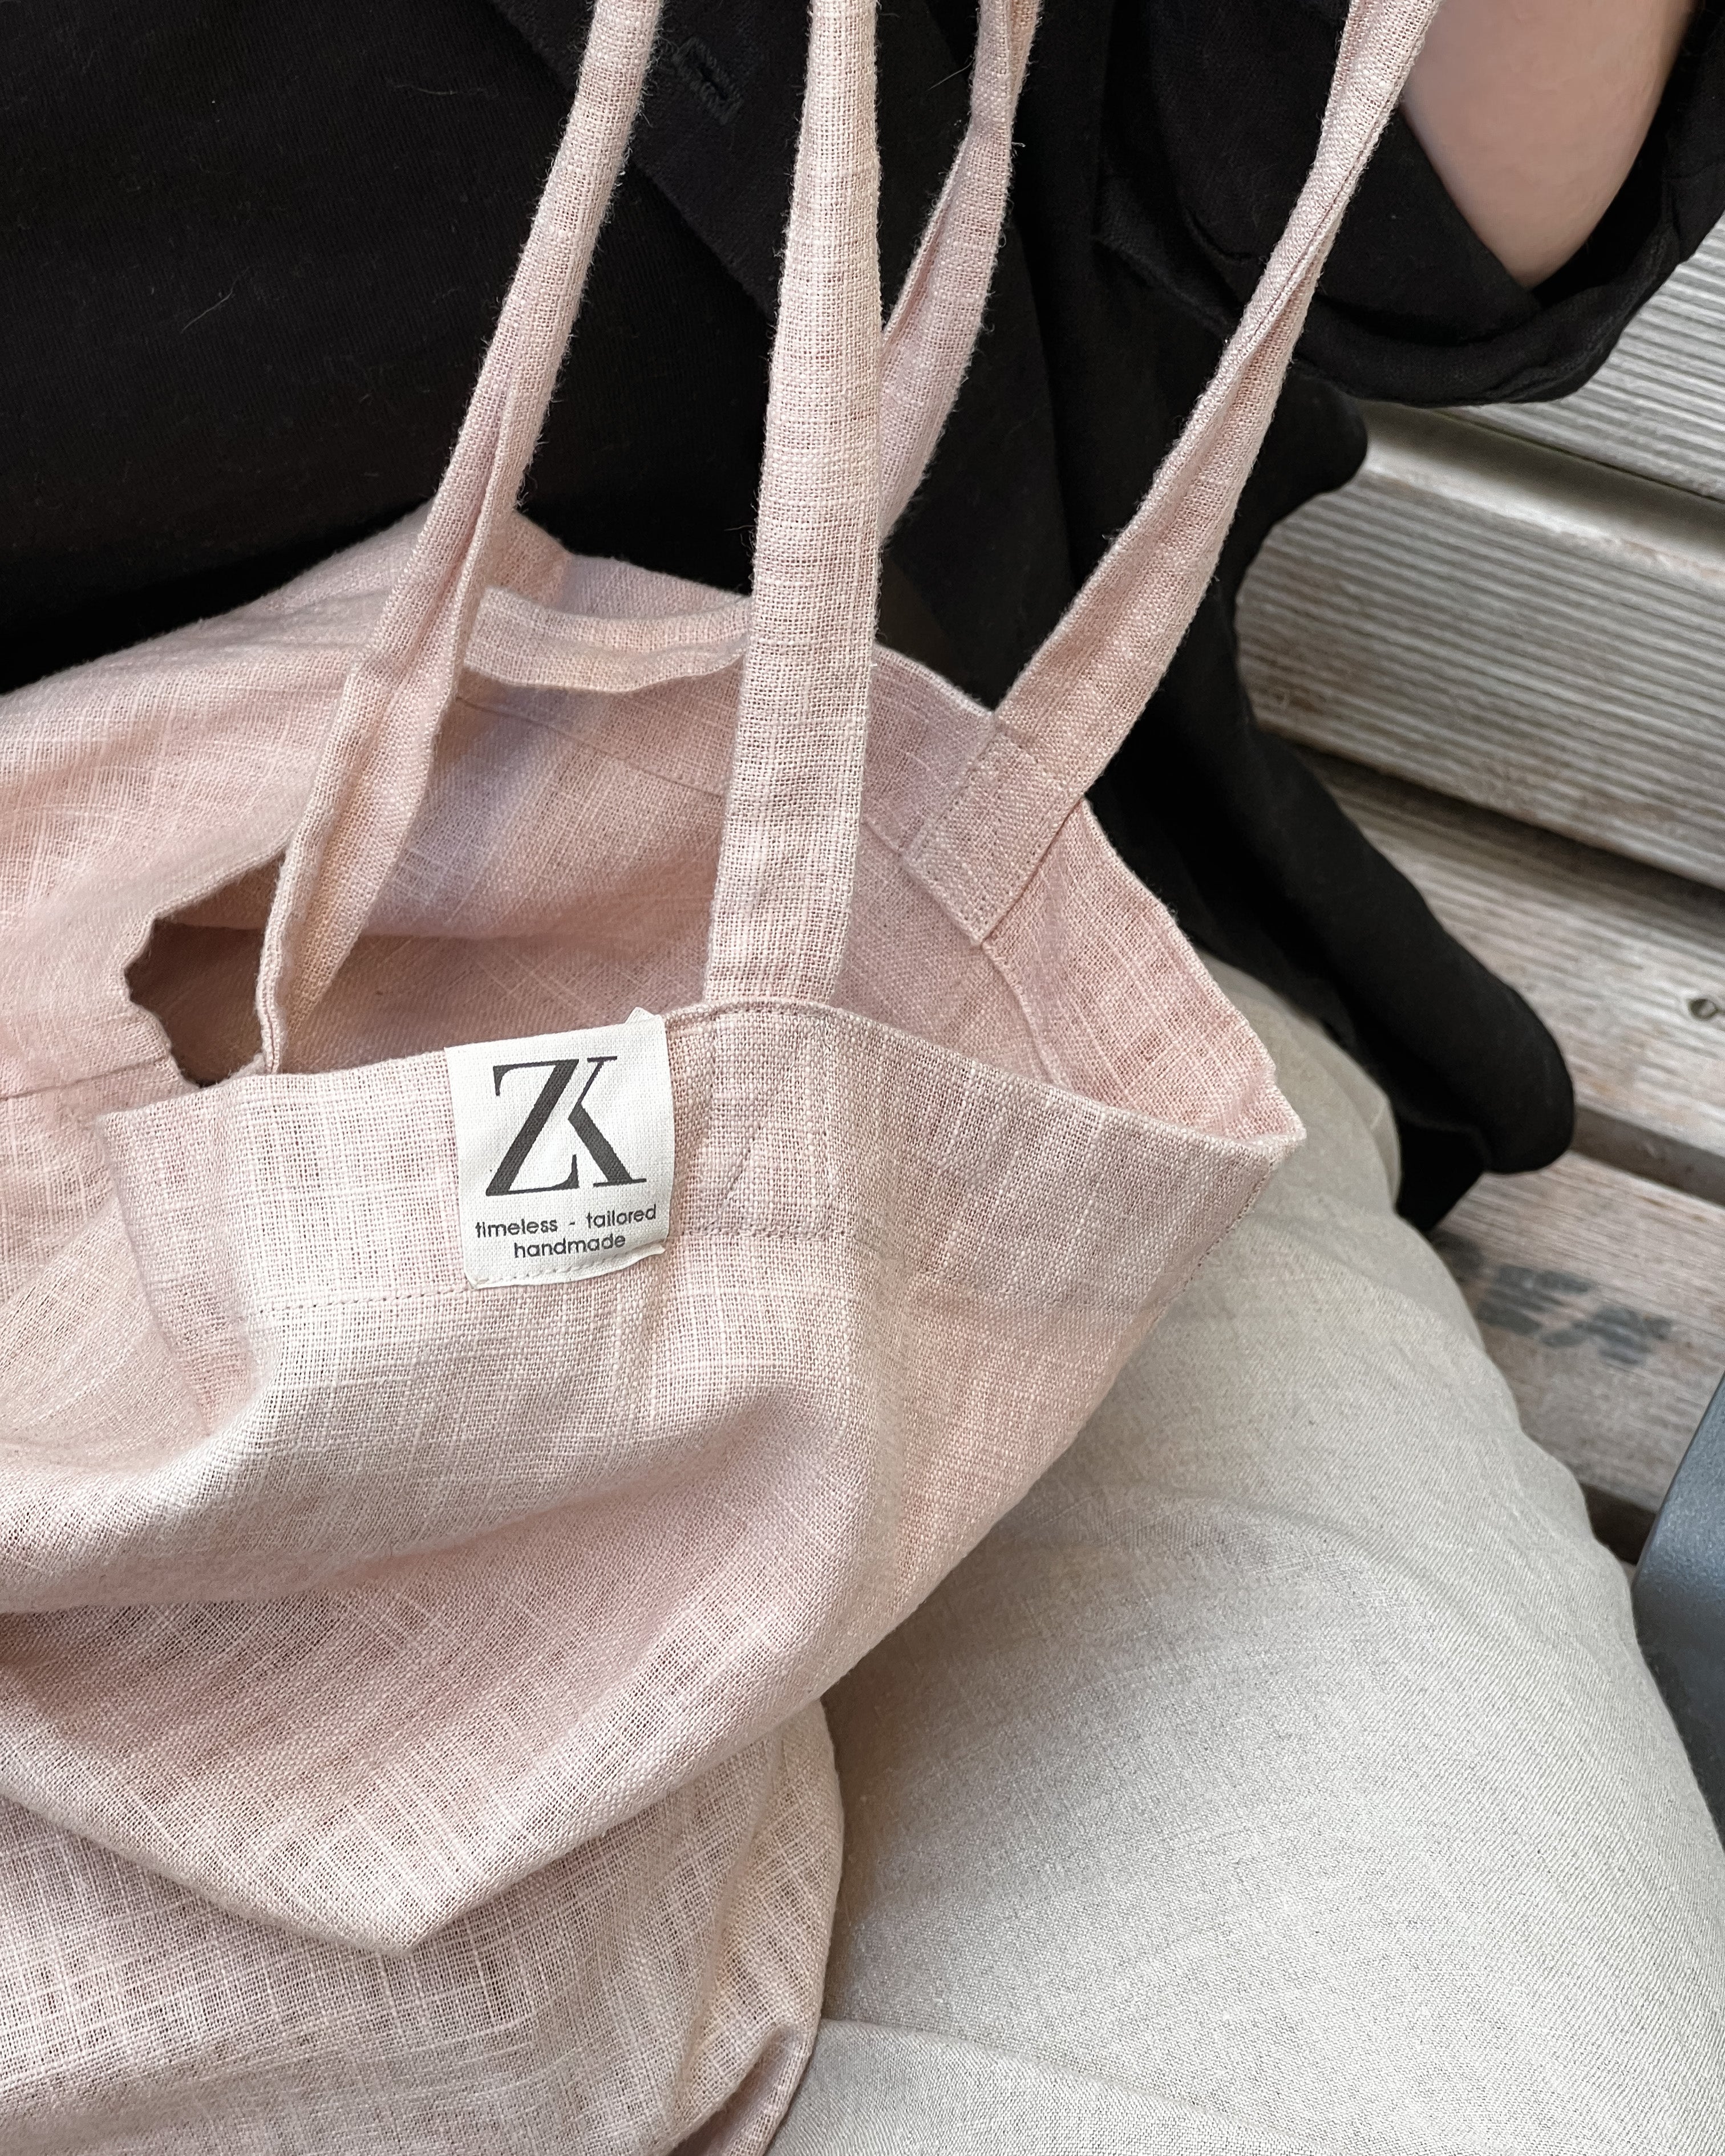 Tailor made bag or stock bag? | The Bag Workshop